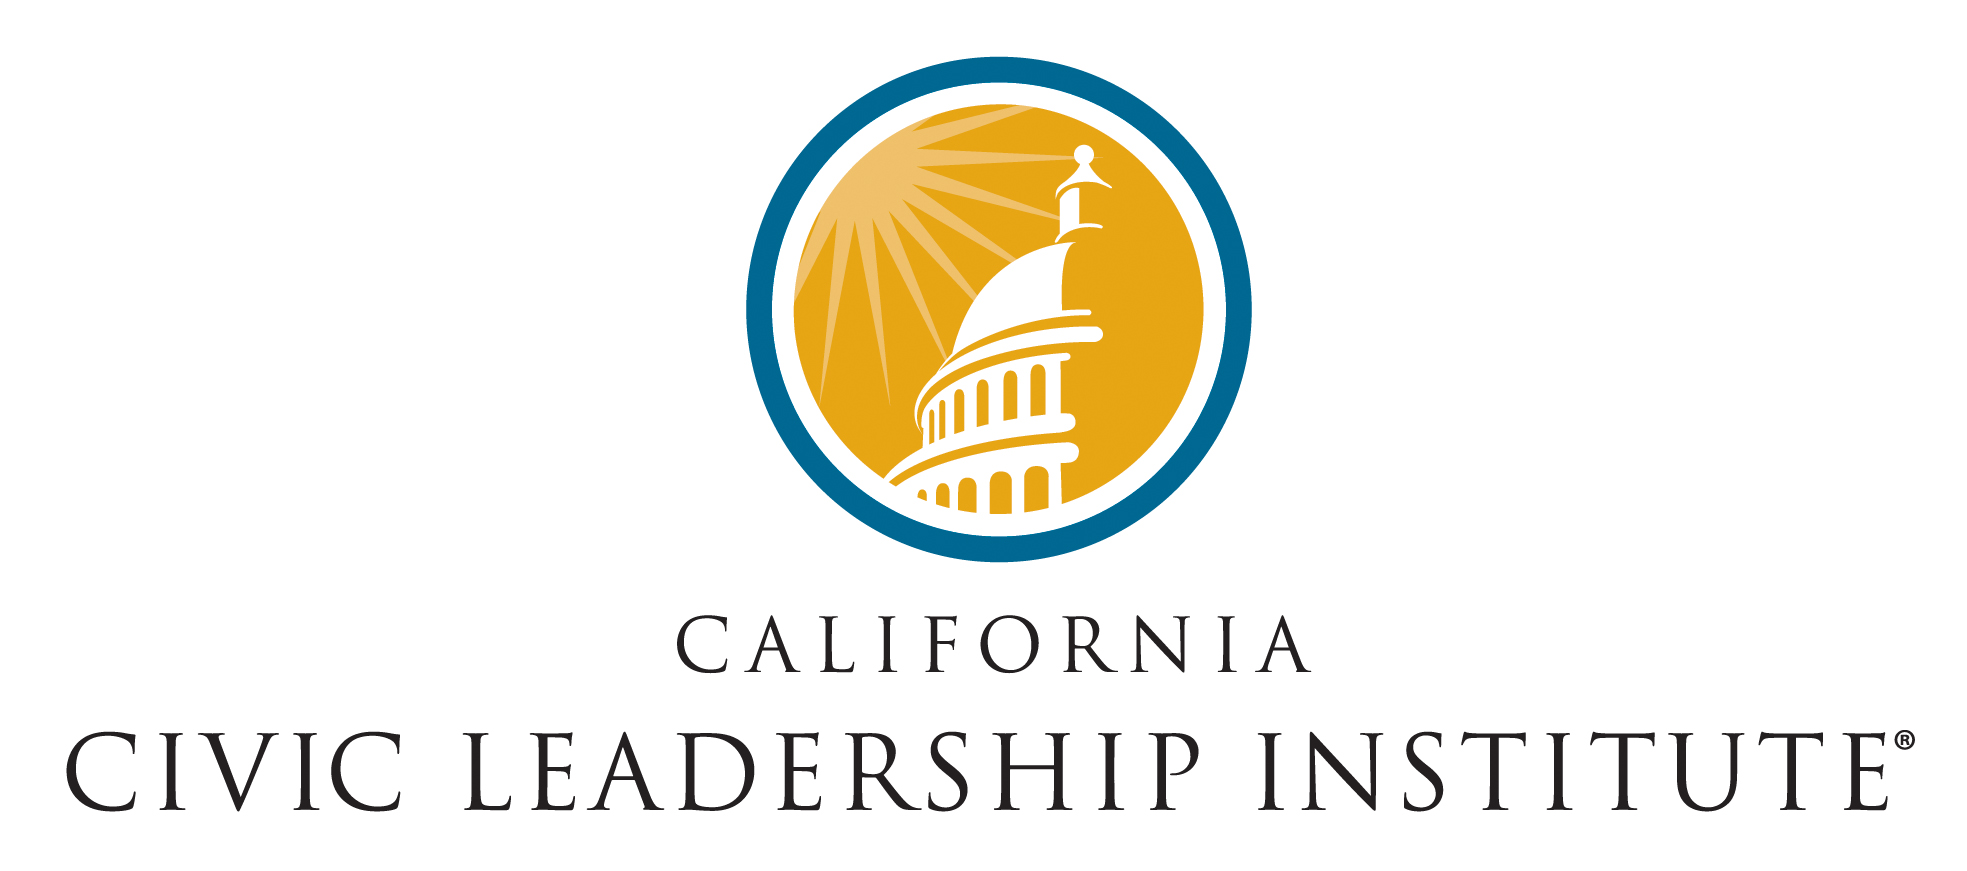 California Civic Leadership Institute logo